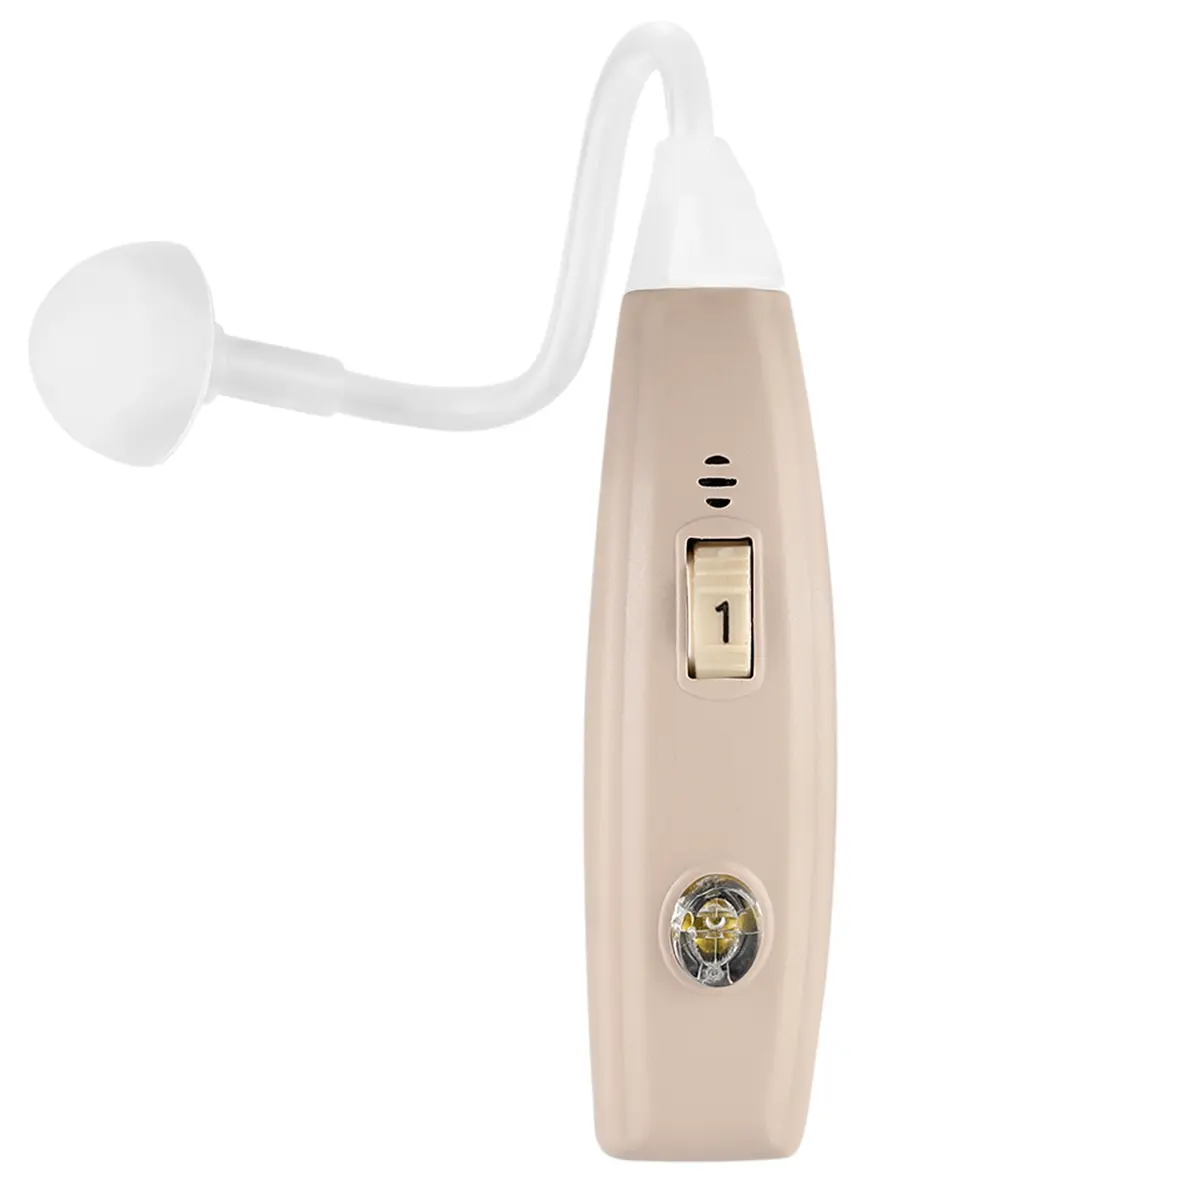 CONTEC CMS11H ears Hearing Aids Digital hearing aid